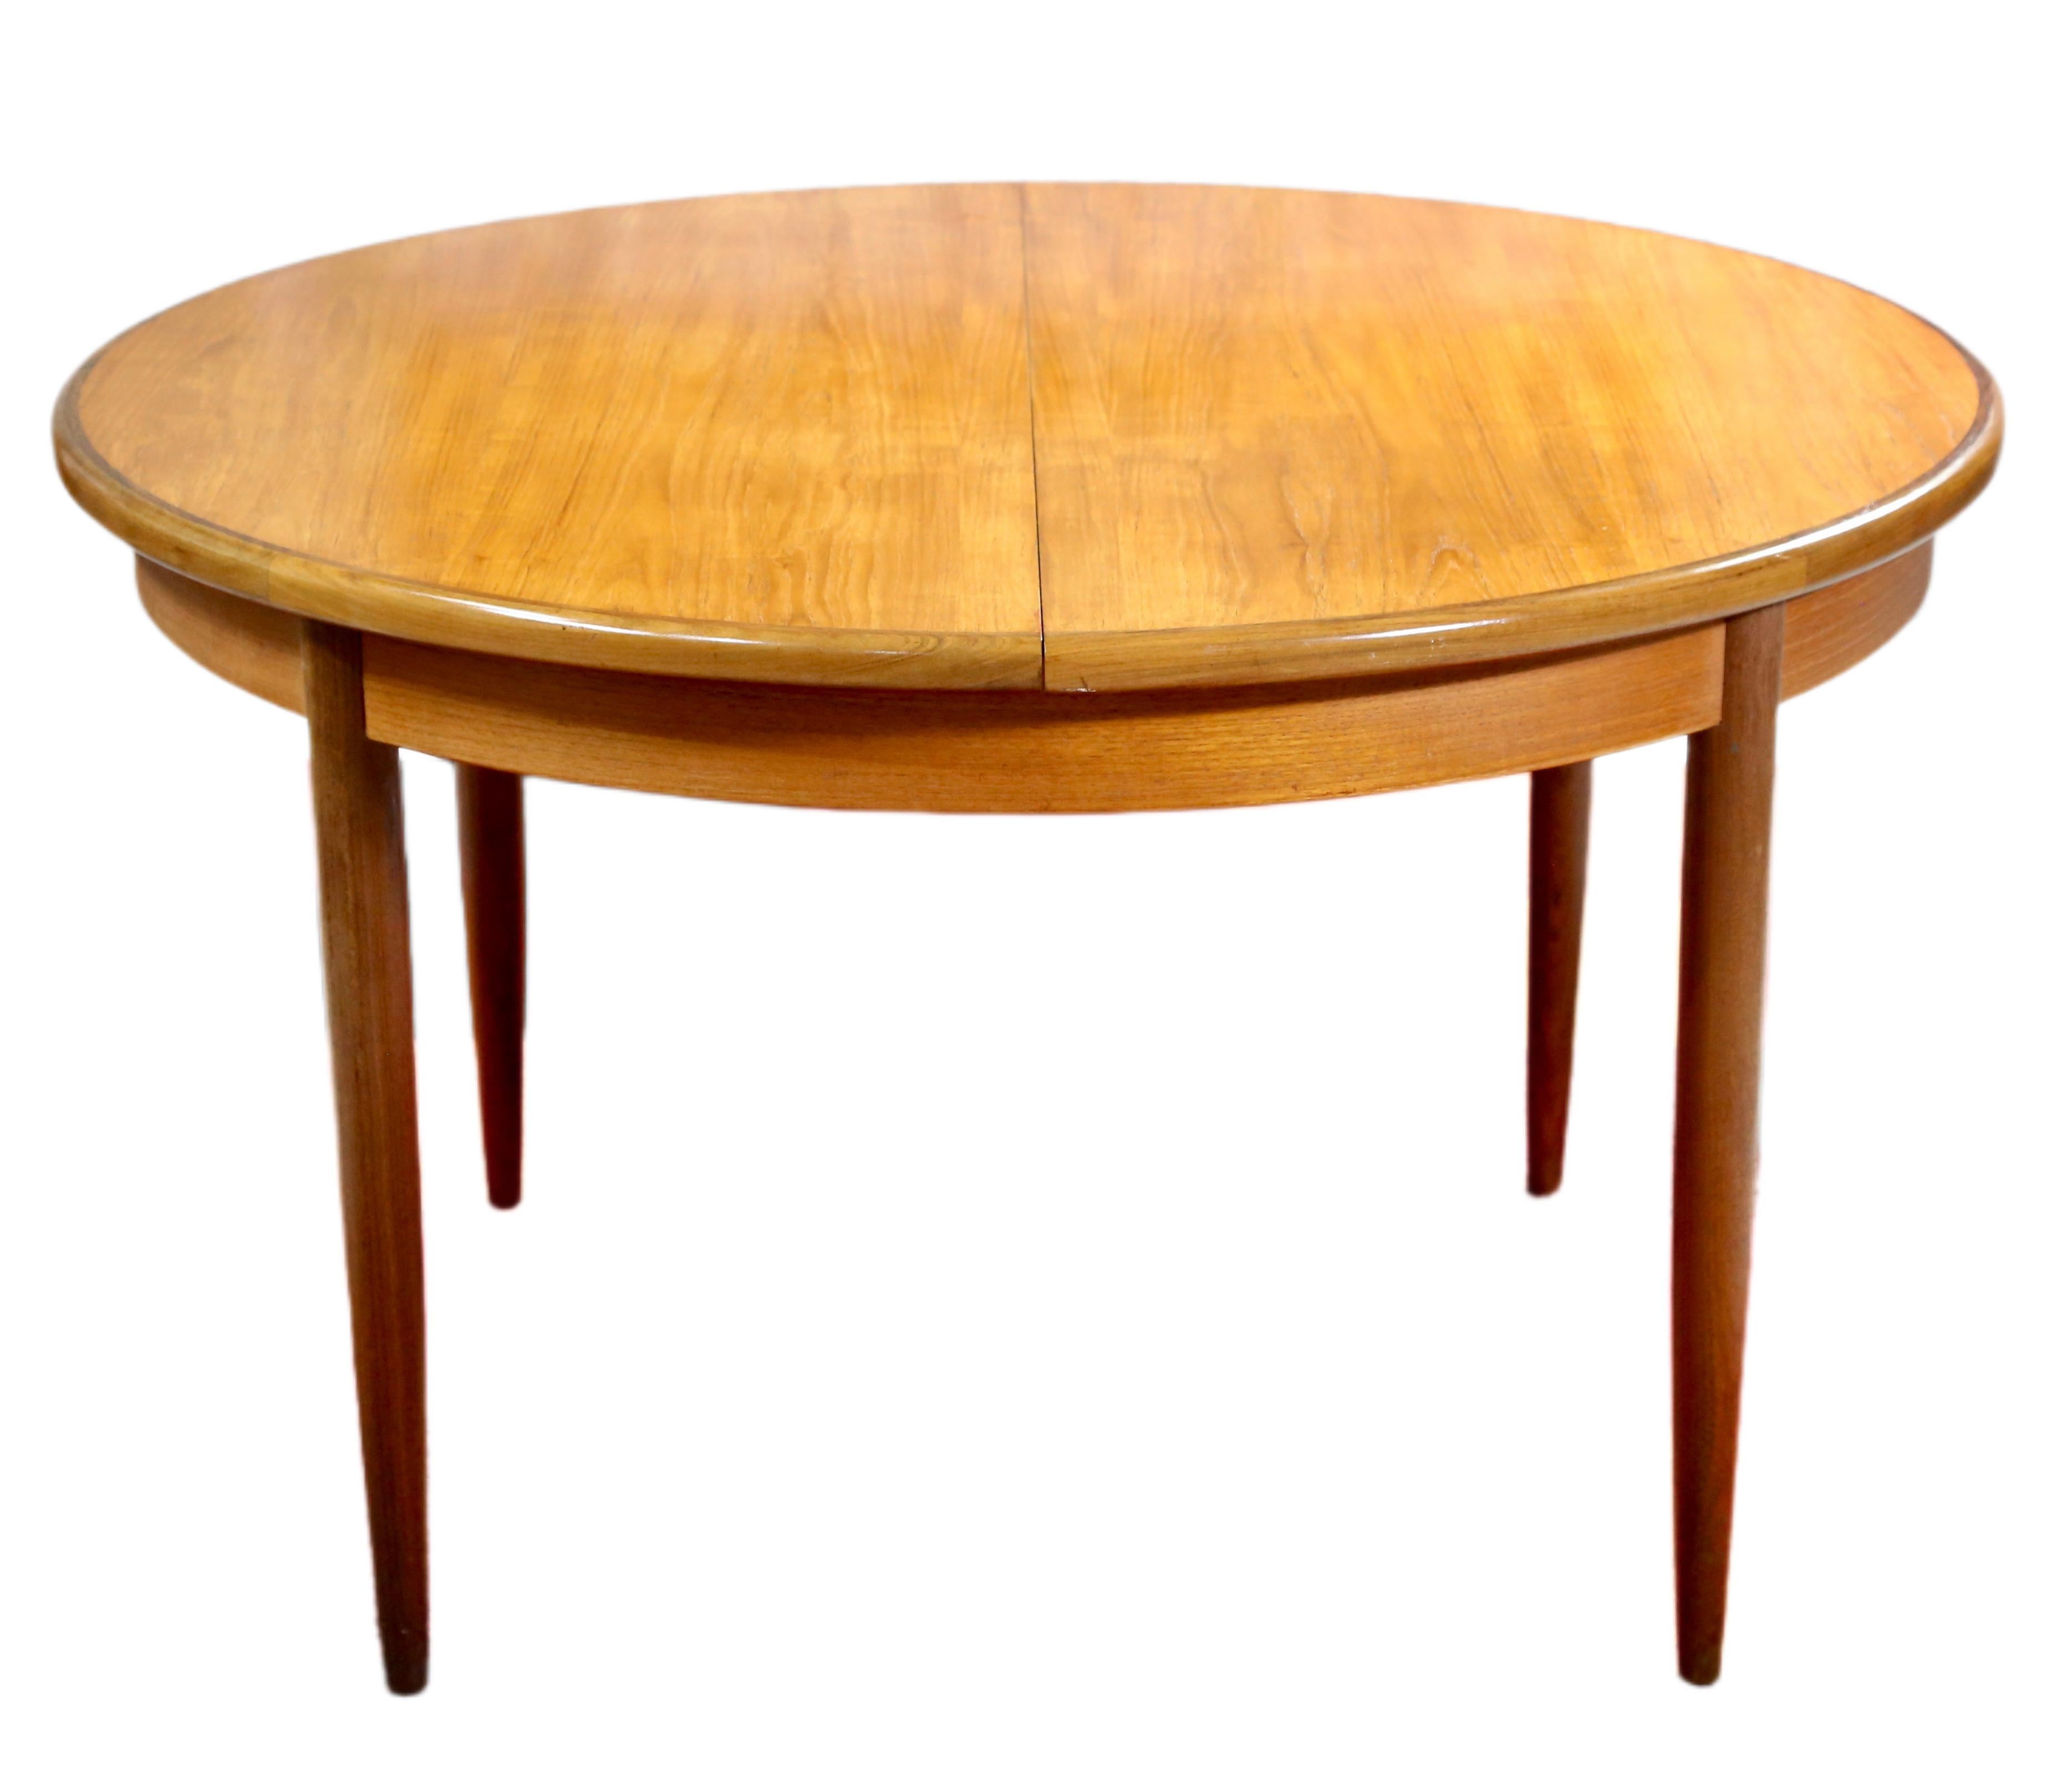 Remarquable table de salle à manger en teck de style danois, conçue par VB Wilkins dans le cadre de la gamme Fresco pour G-Plan. La table présente un plateau rond à deux panneaux, s'ouvrant pour révéler des panneaux d'extension rabattables,